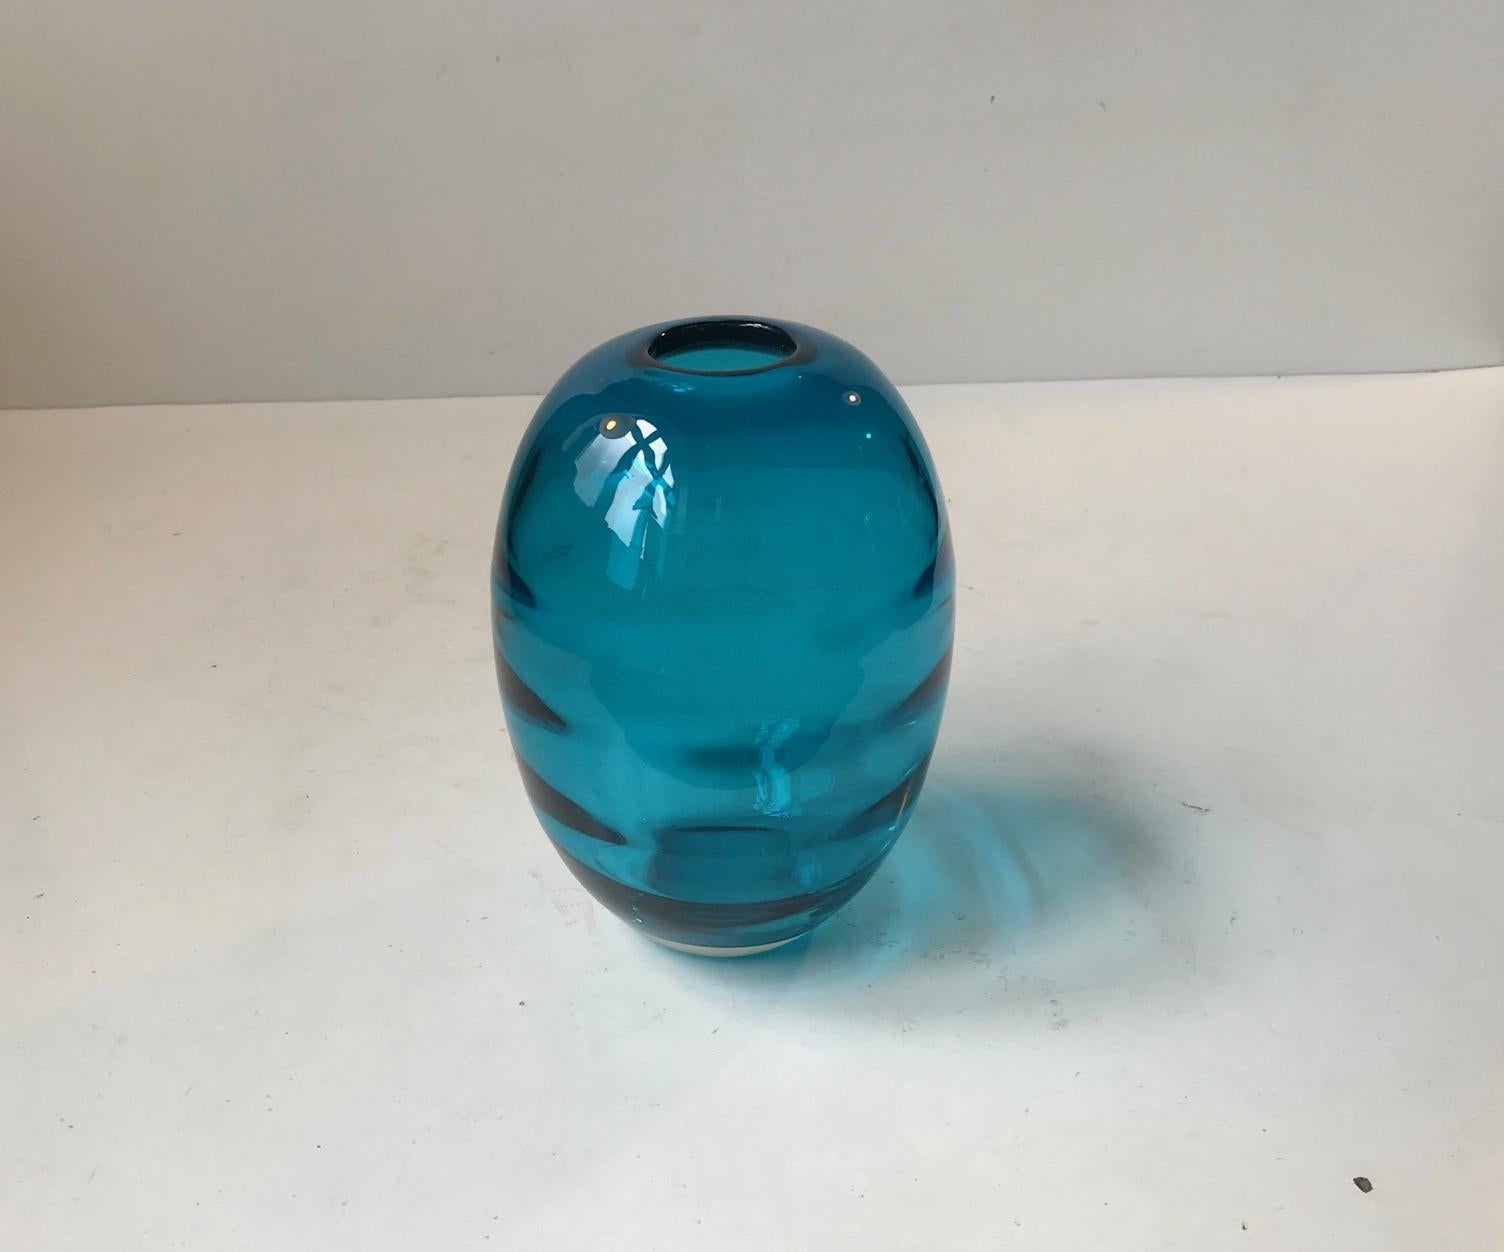 Vase en verre turquoise soufflé à la main, fabriqué par Holmegaard au Danemark dans les années 1950. Belle couleur turquoise profonde et décorée intérieurement de bandes optiques horizontales qui soulignent la forme ovoïde. Il ne porte pas de